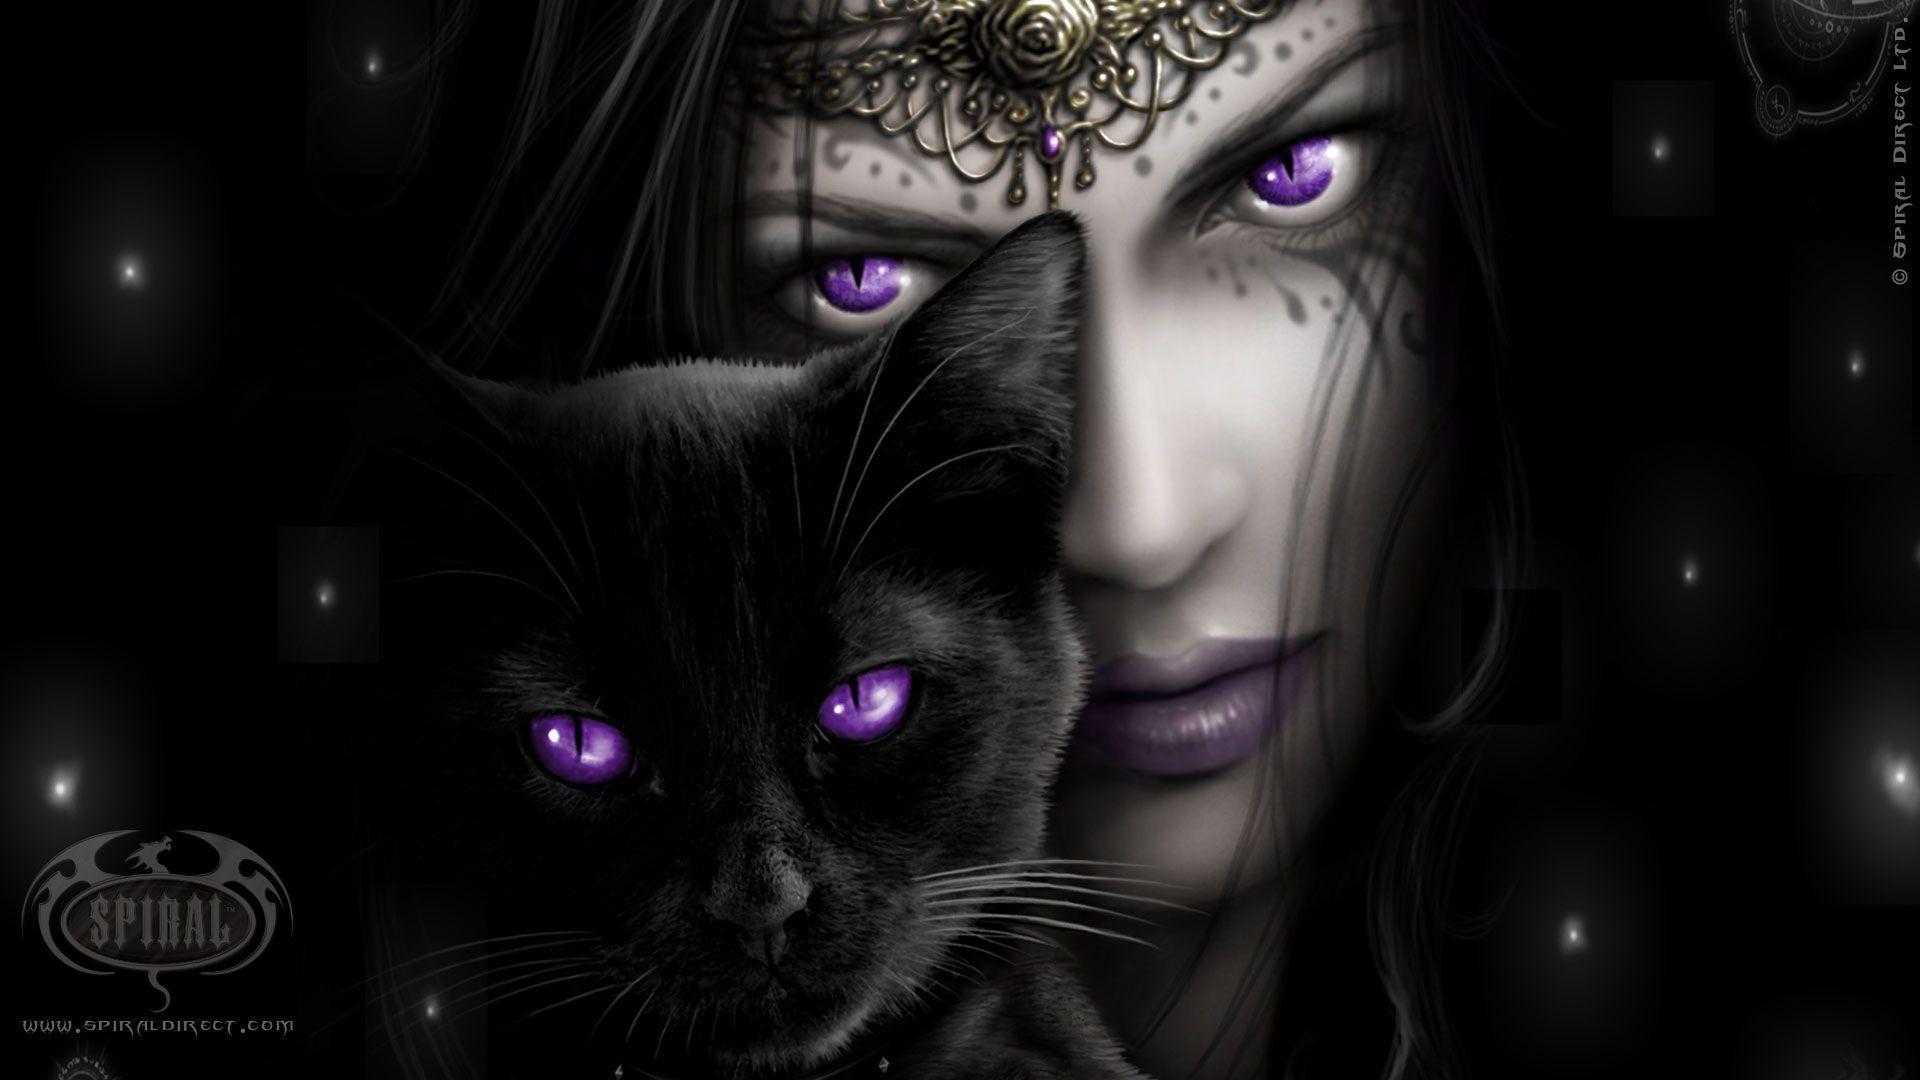 Dark Fantasy. image of eyes beauty black cat dark face fantasy